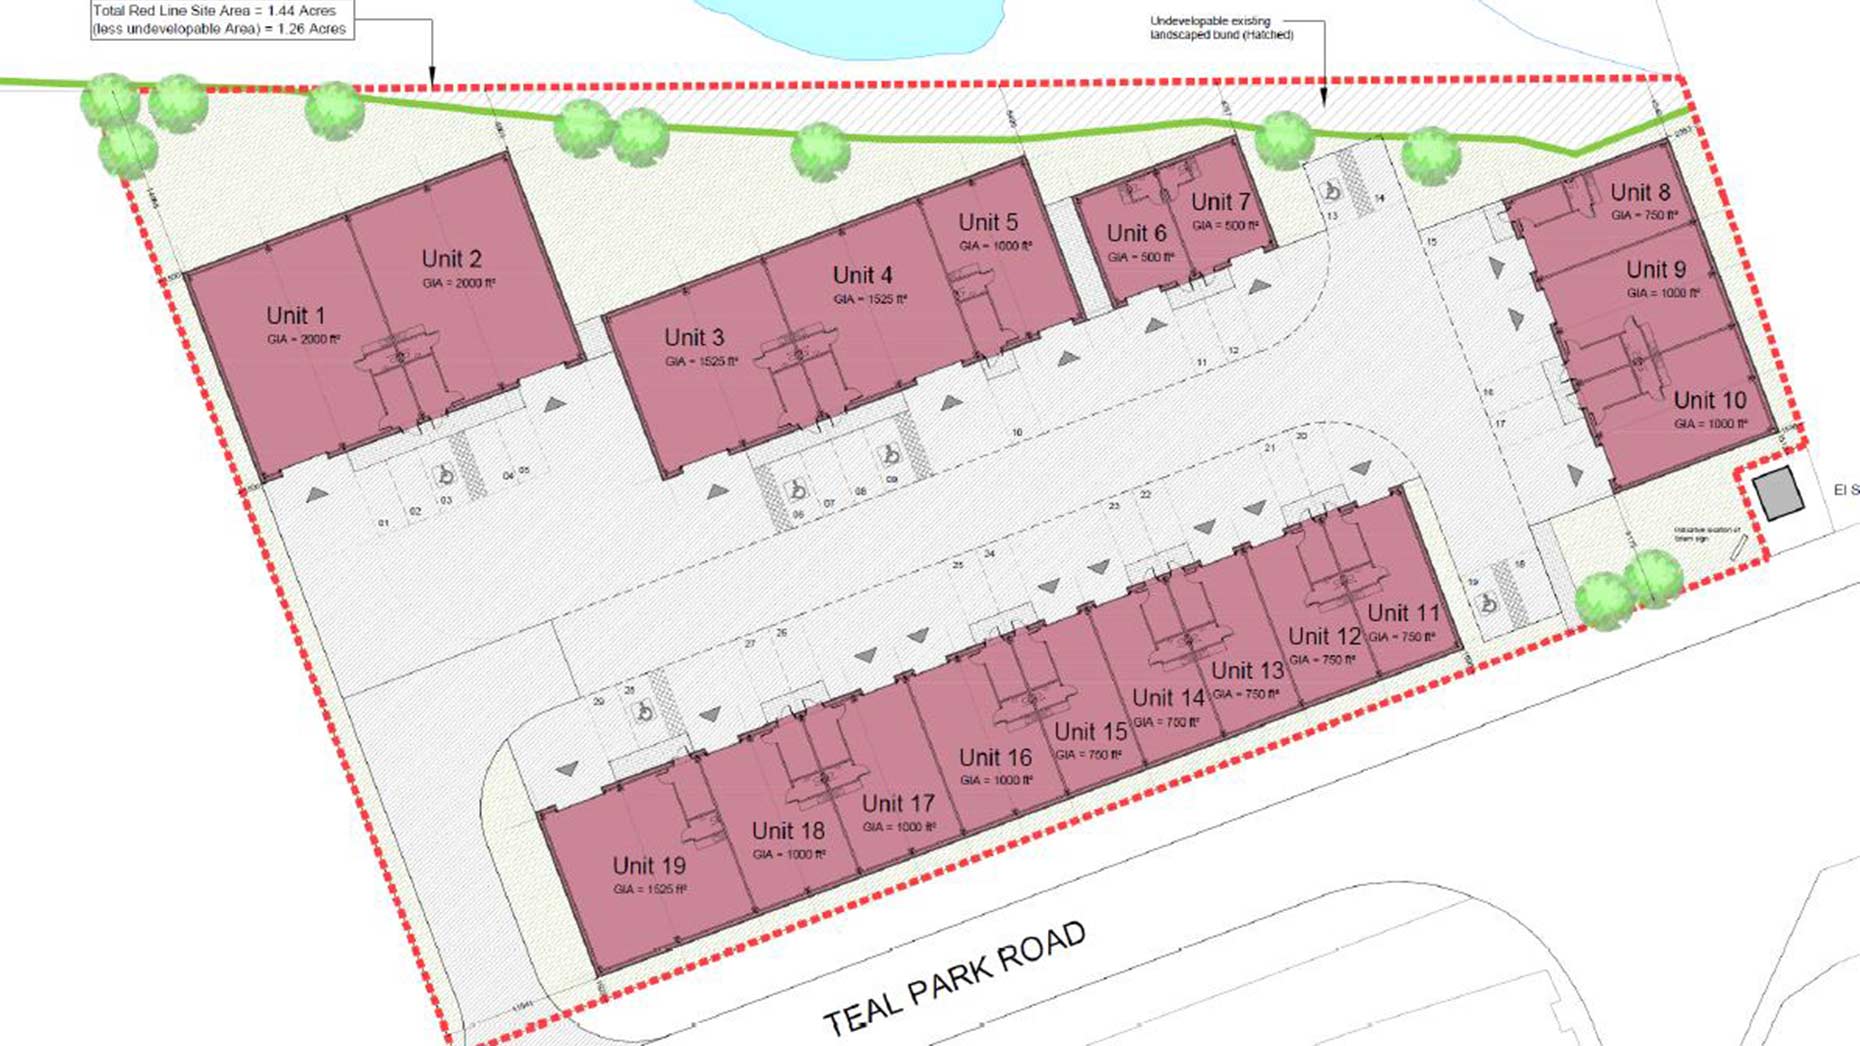 Teal Park development plans